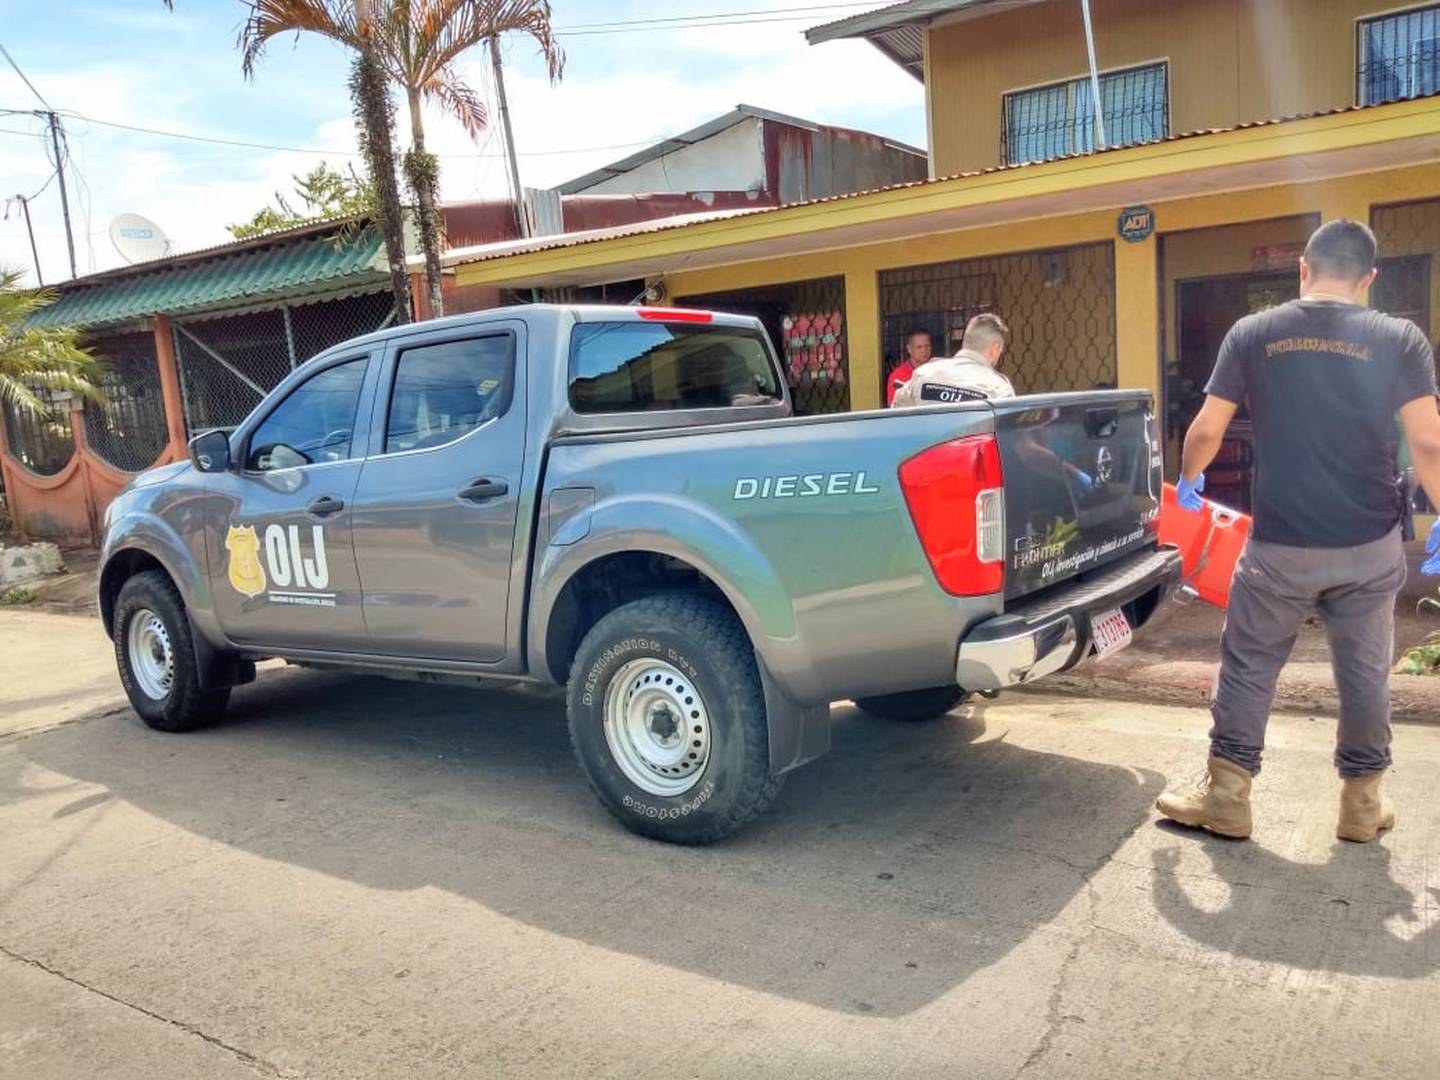 Adulto mayor de 78 años es asesinado dentro de albergue para indigentes en barrio Los Cocos de Limón. Foto Raúl Cascante.